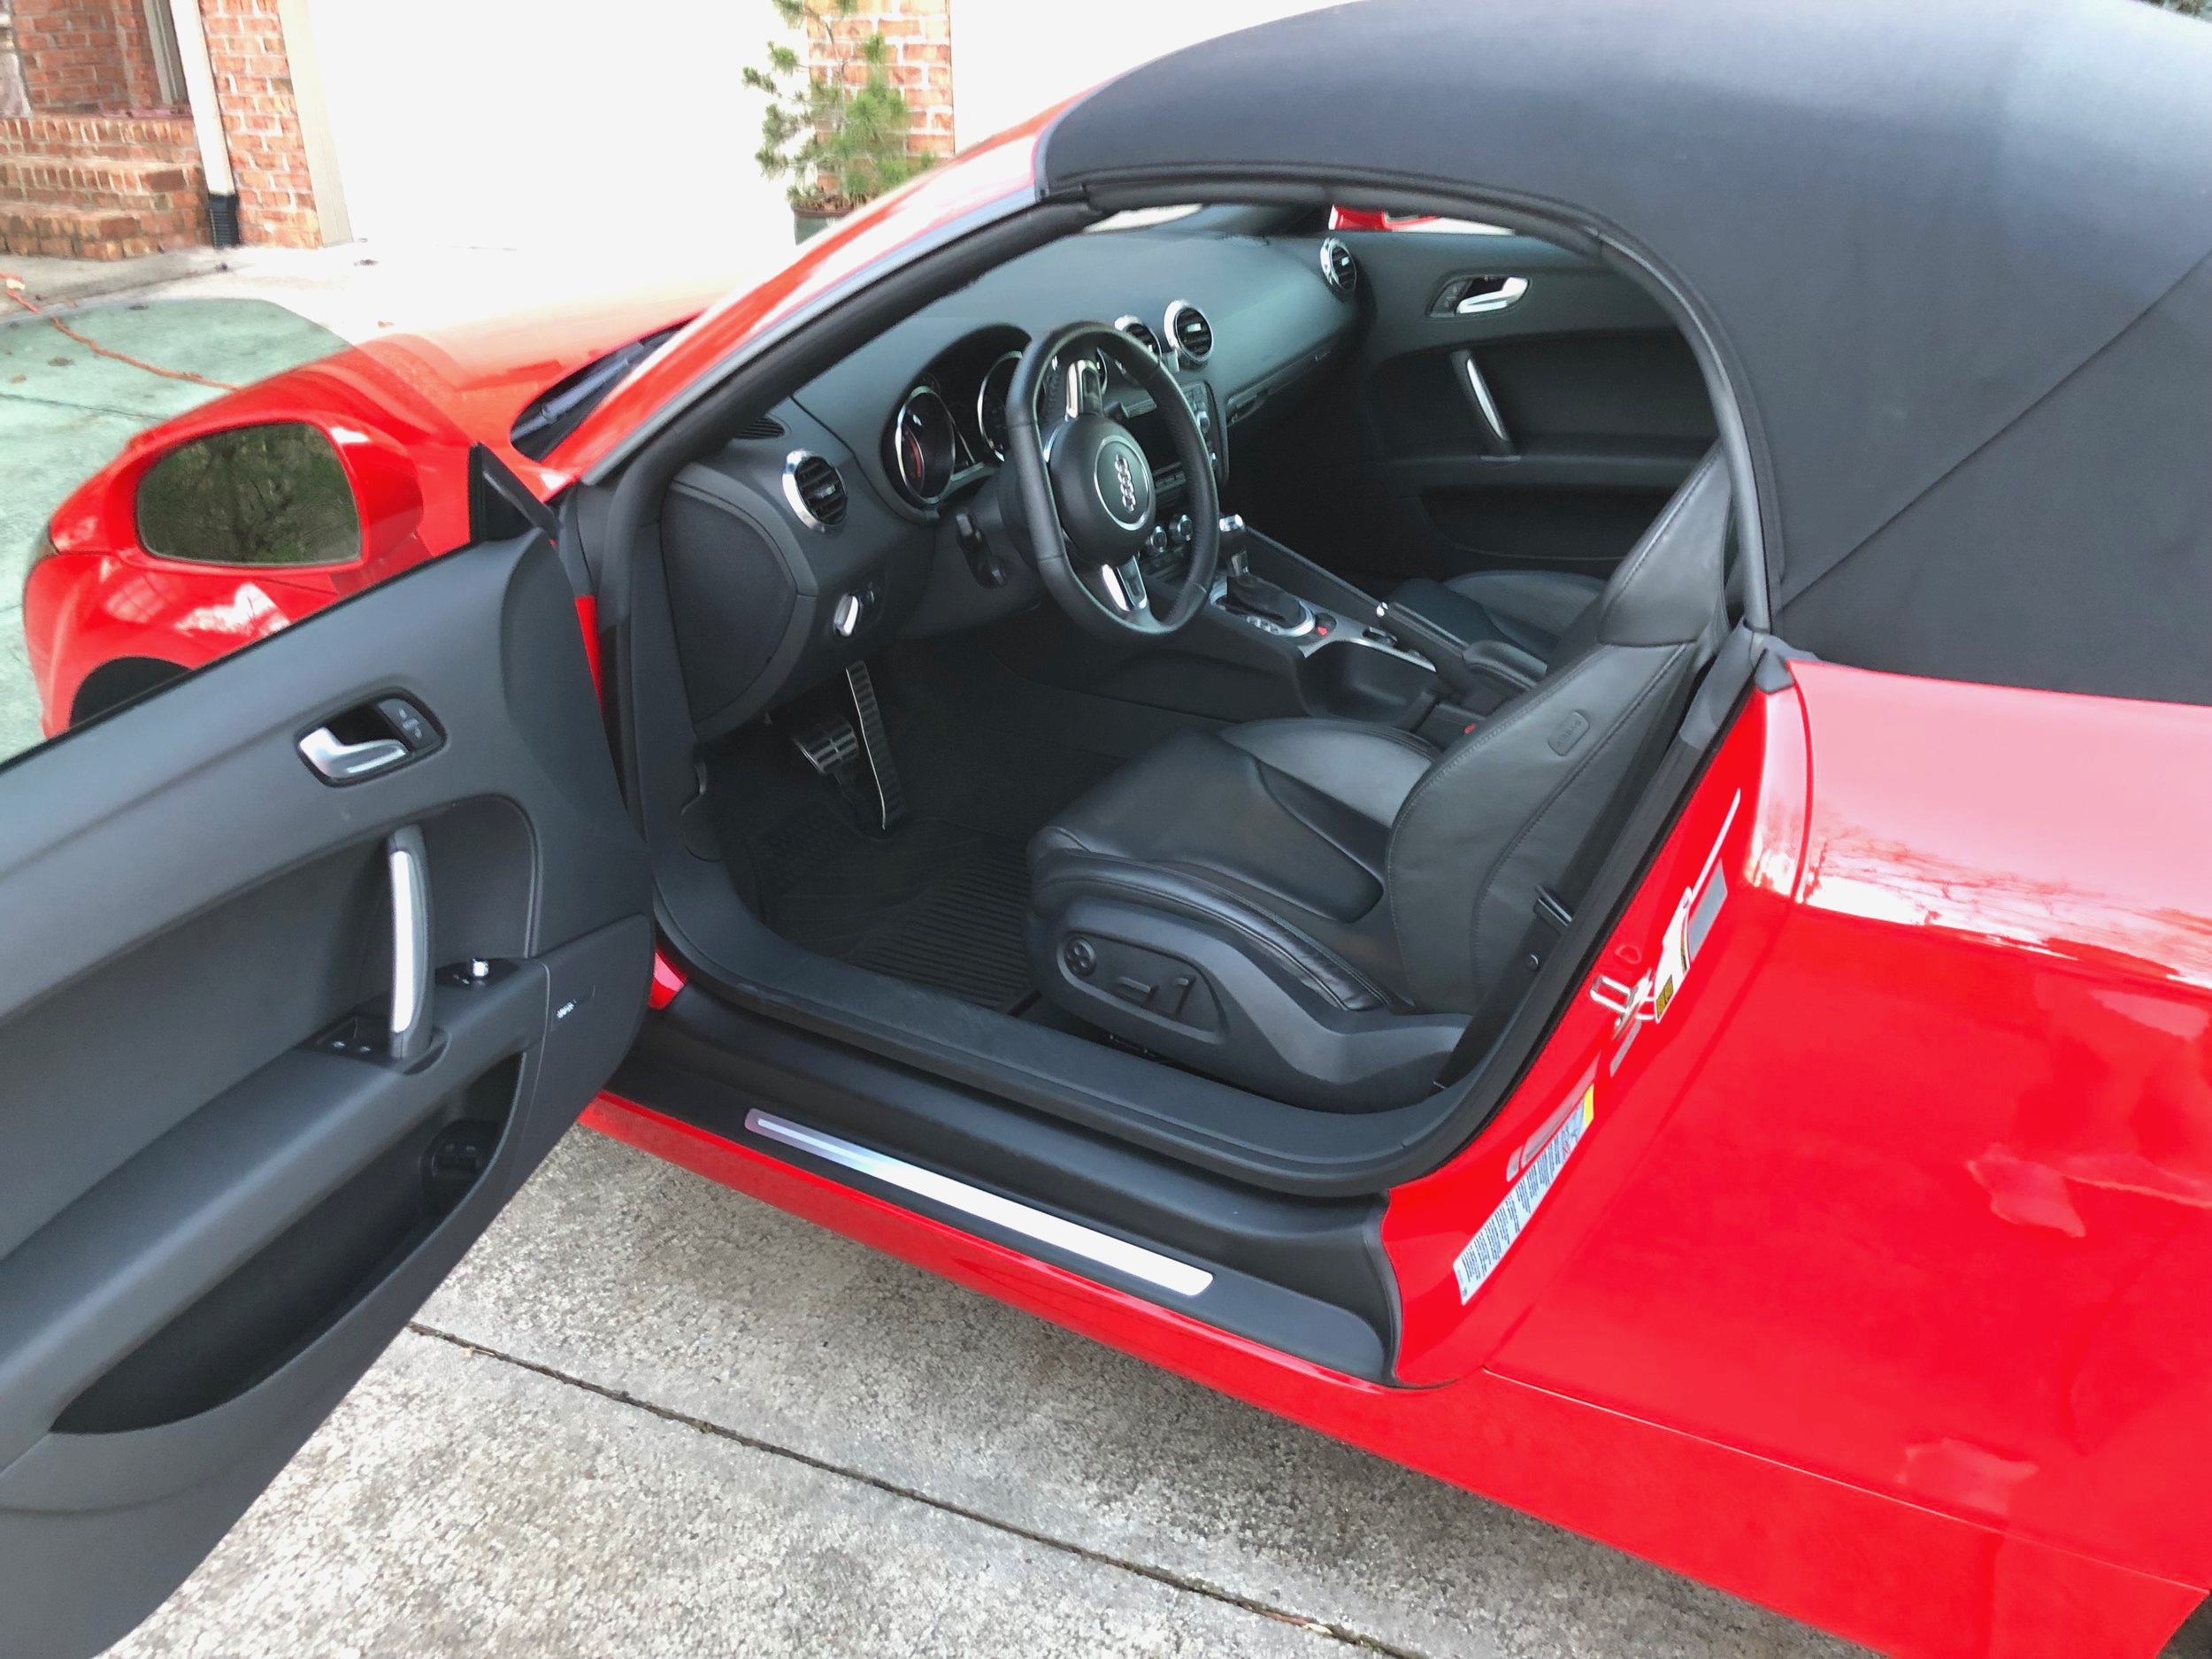 Red Audi TT Interior